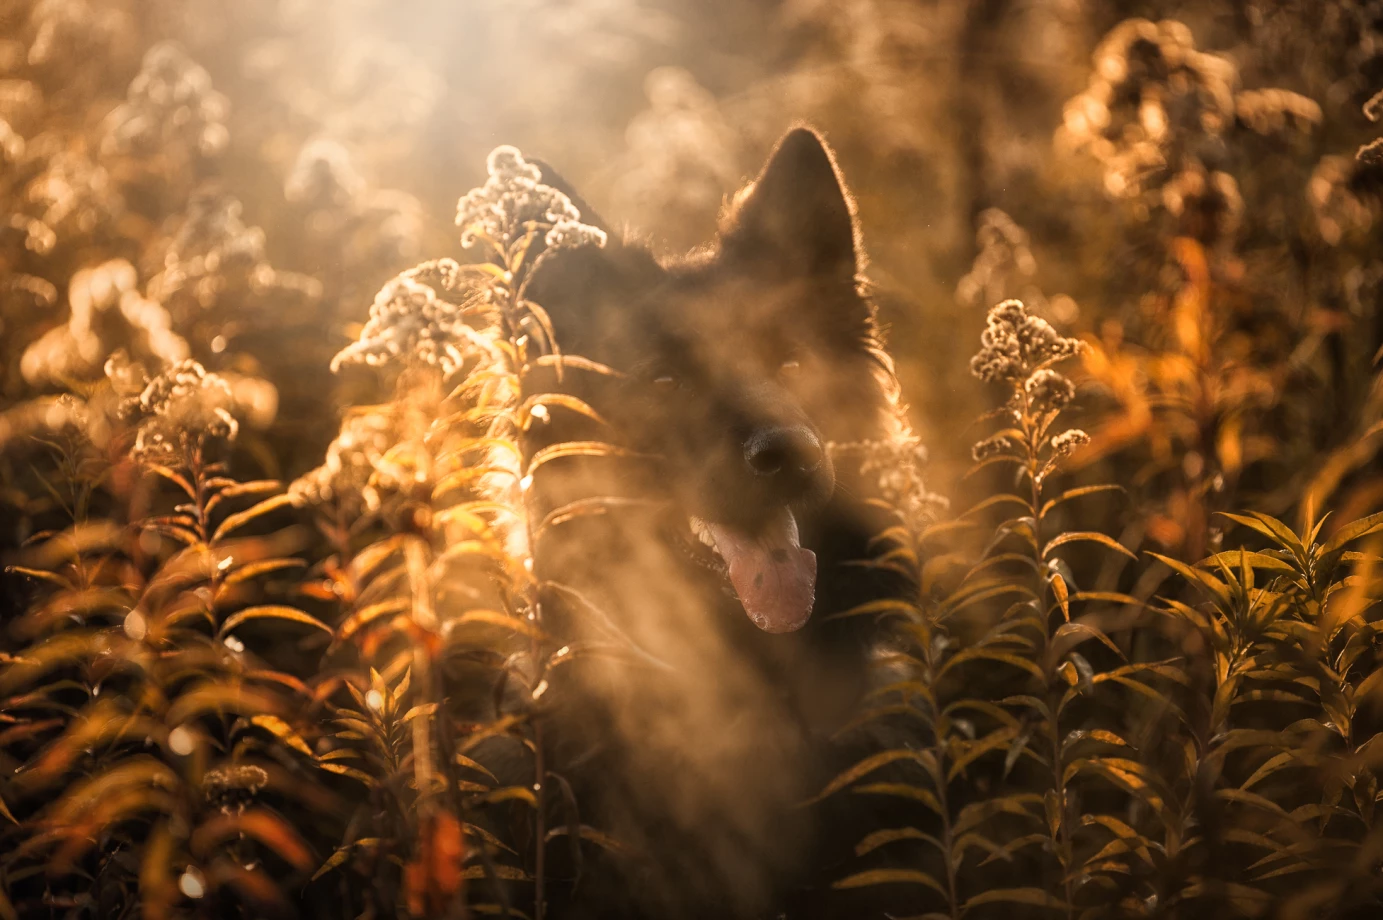 fotograf kielce anna-rzeszowska portfolio zdjecia zdjecia zwierzat sesja zdjeciowa konie psy koty